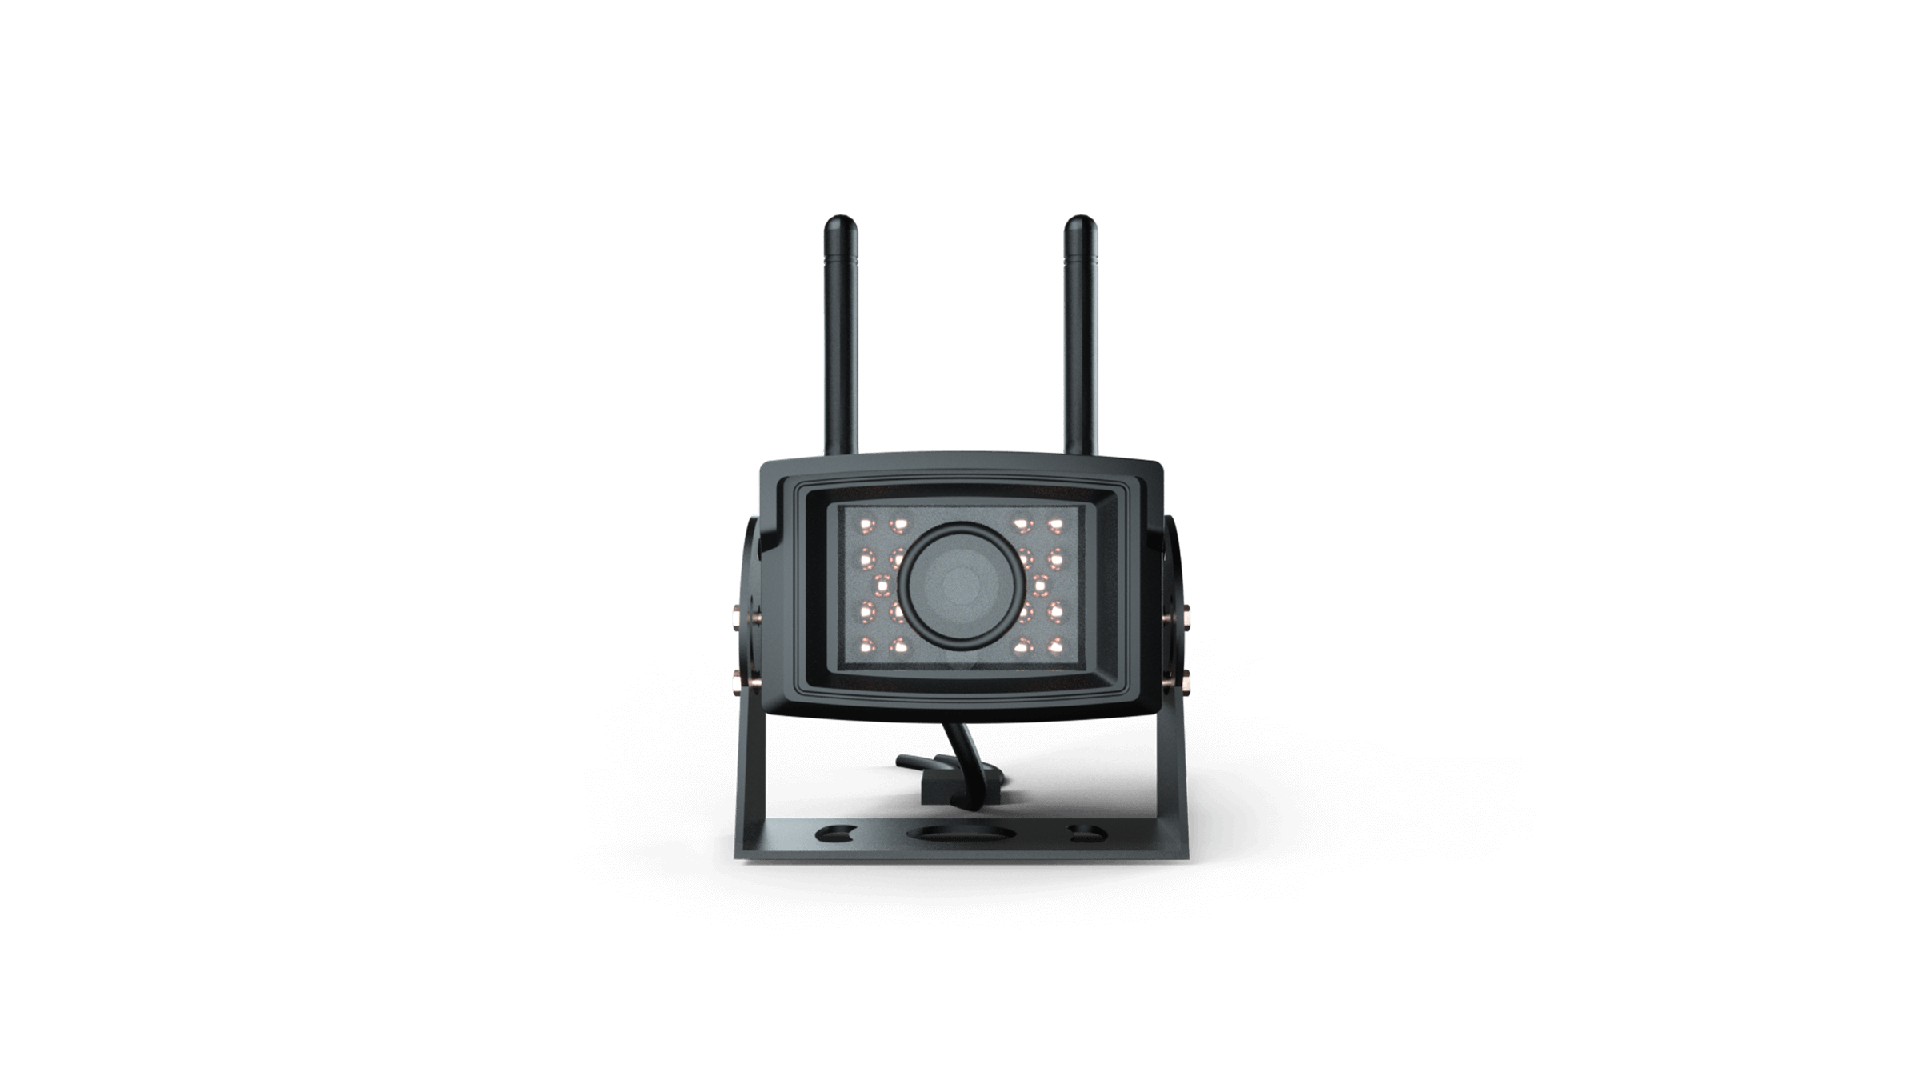 Envia imagens em tempo real (1080P) para o terminal de controle a uma distância de até 20 metros, mesmo à noite (visão noturna infravermelha ativada).